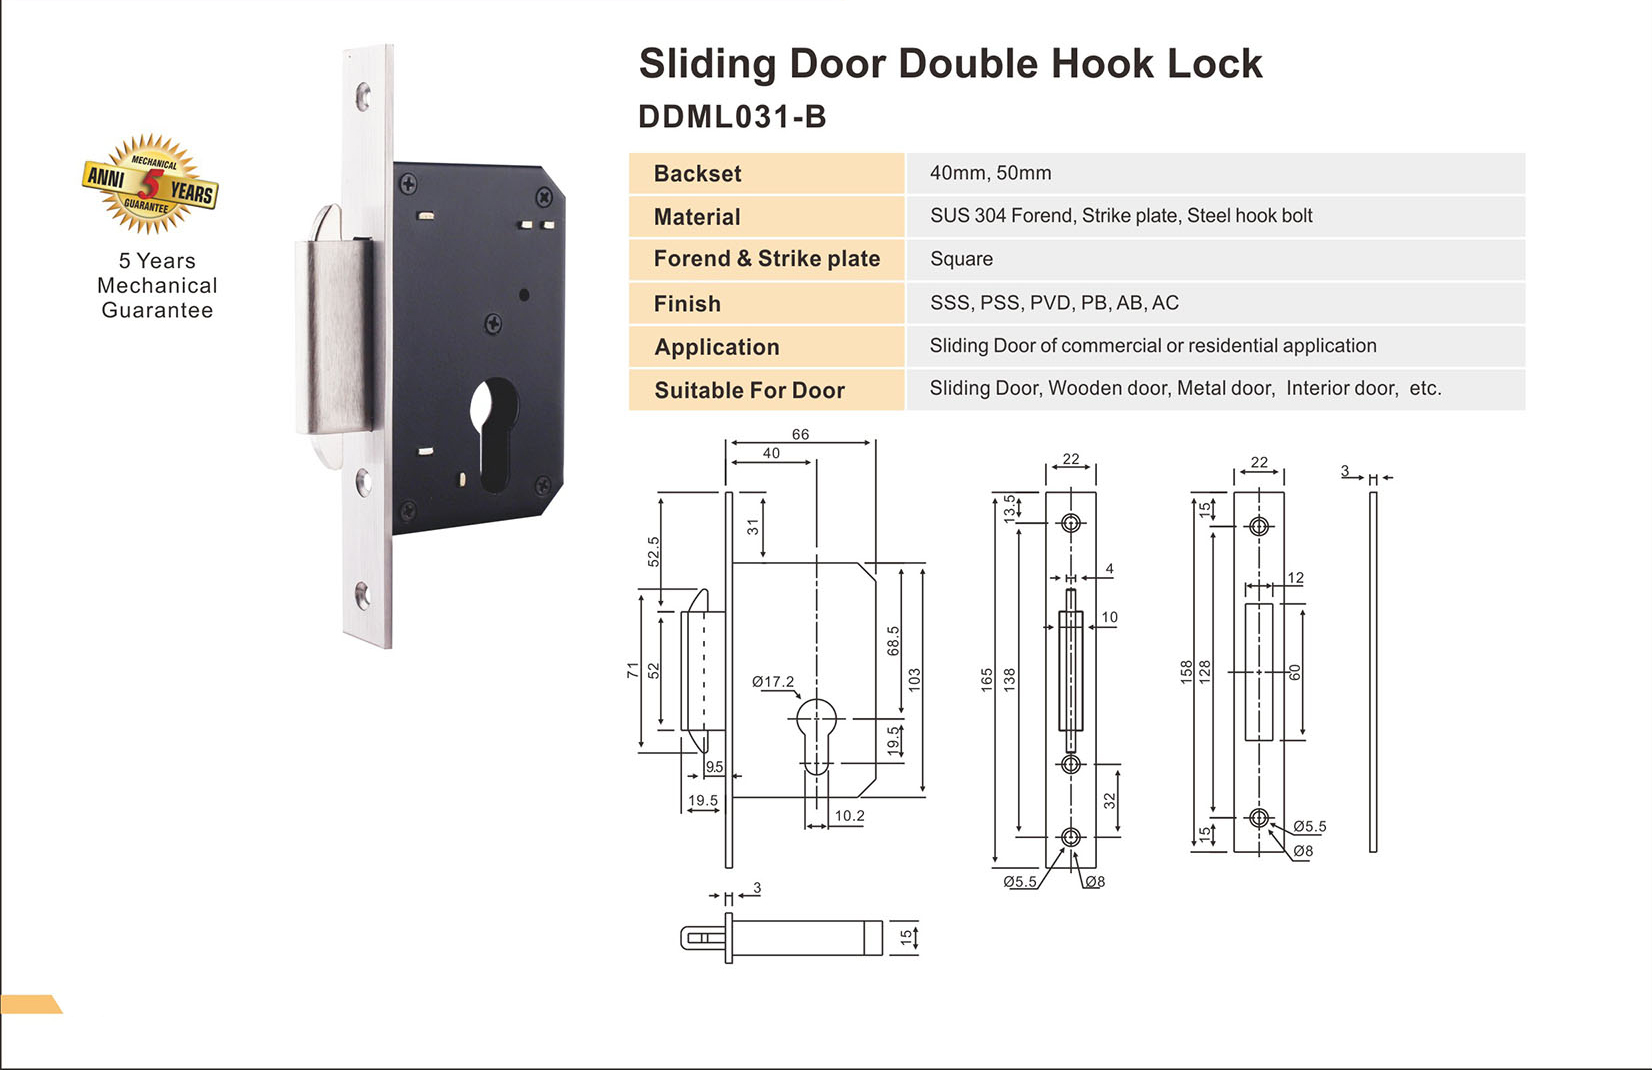 SUS304 جديد قفل هوك مزدوج التصميم لانزلاق الباب-DDML031-B